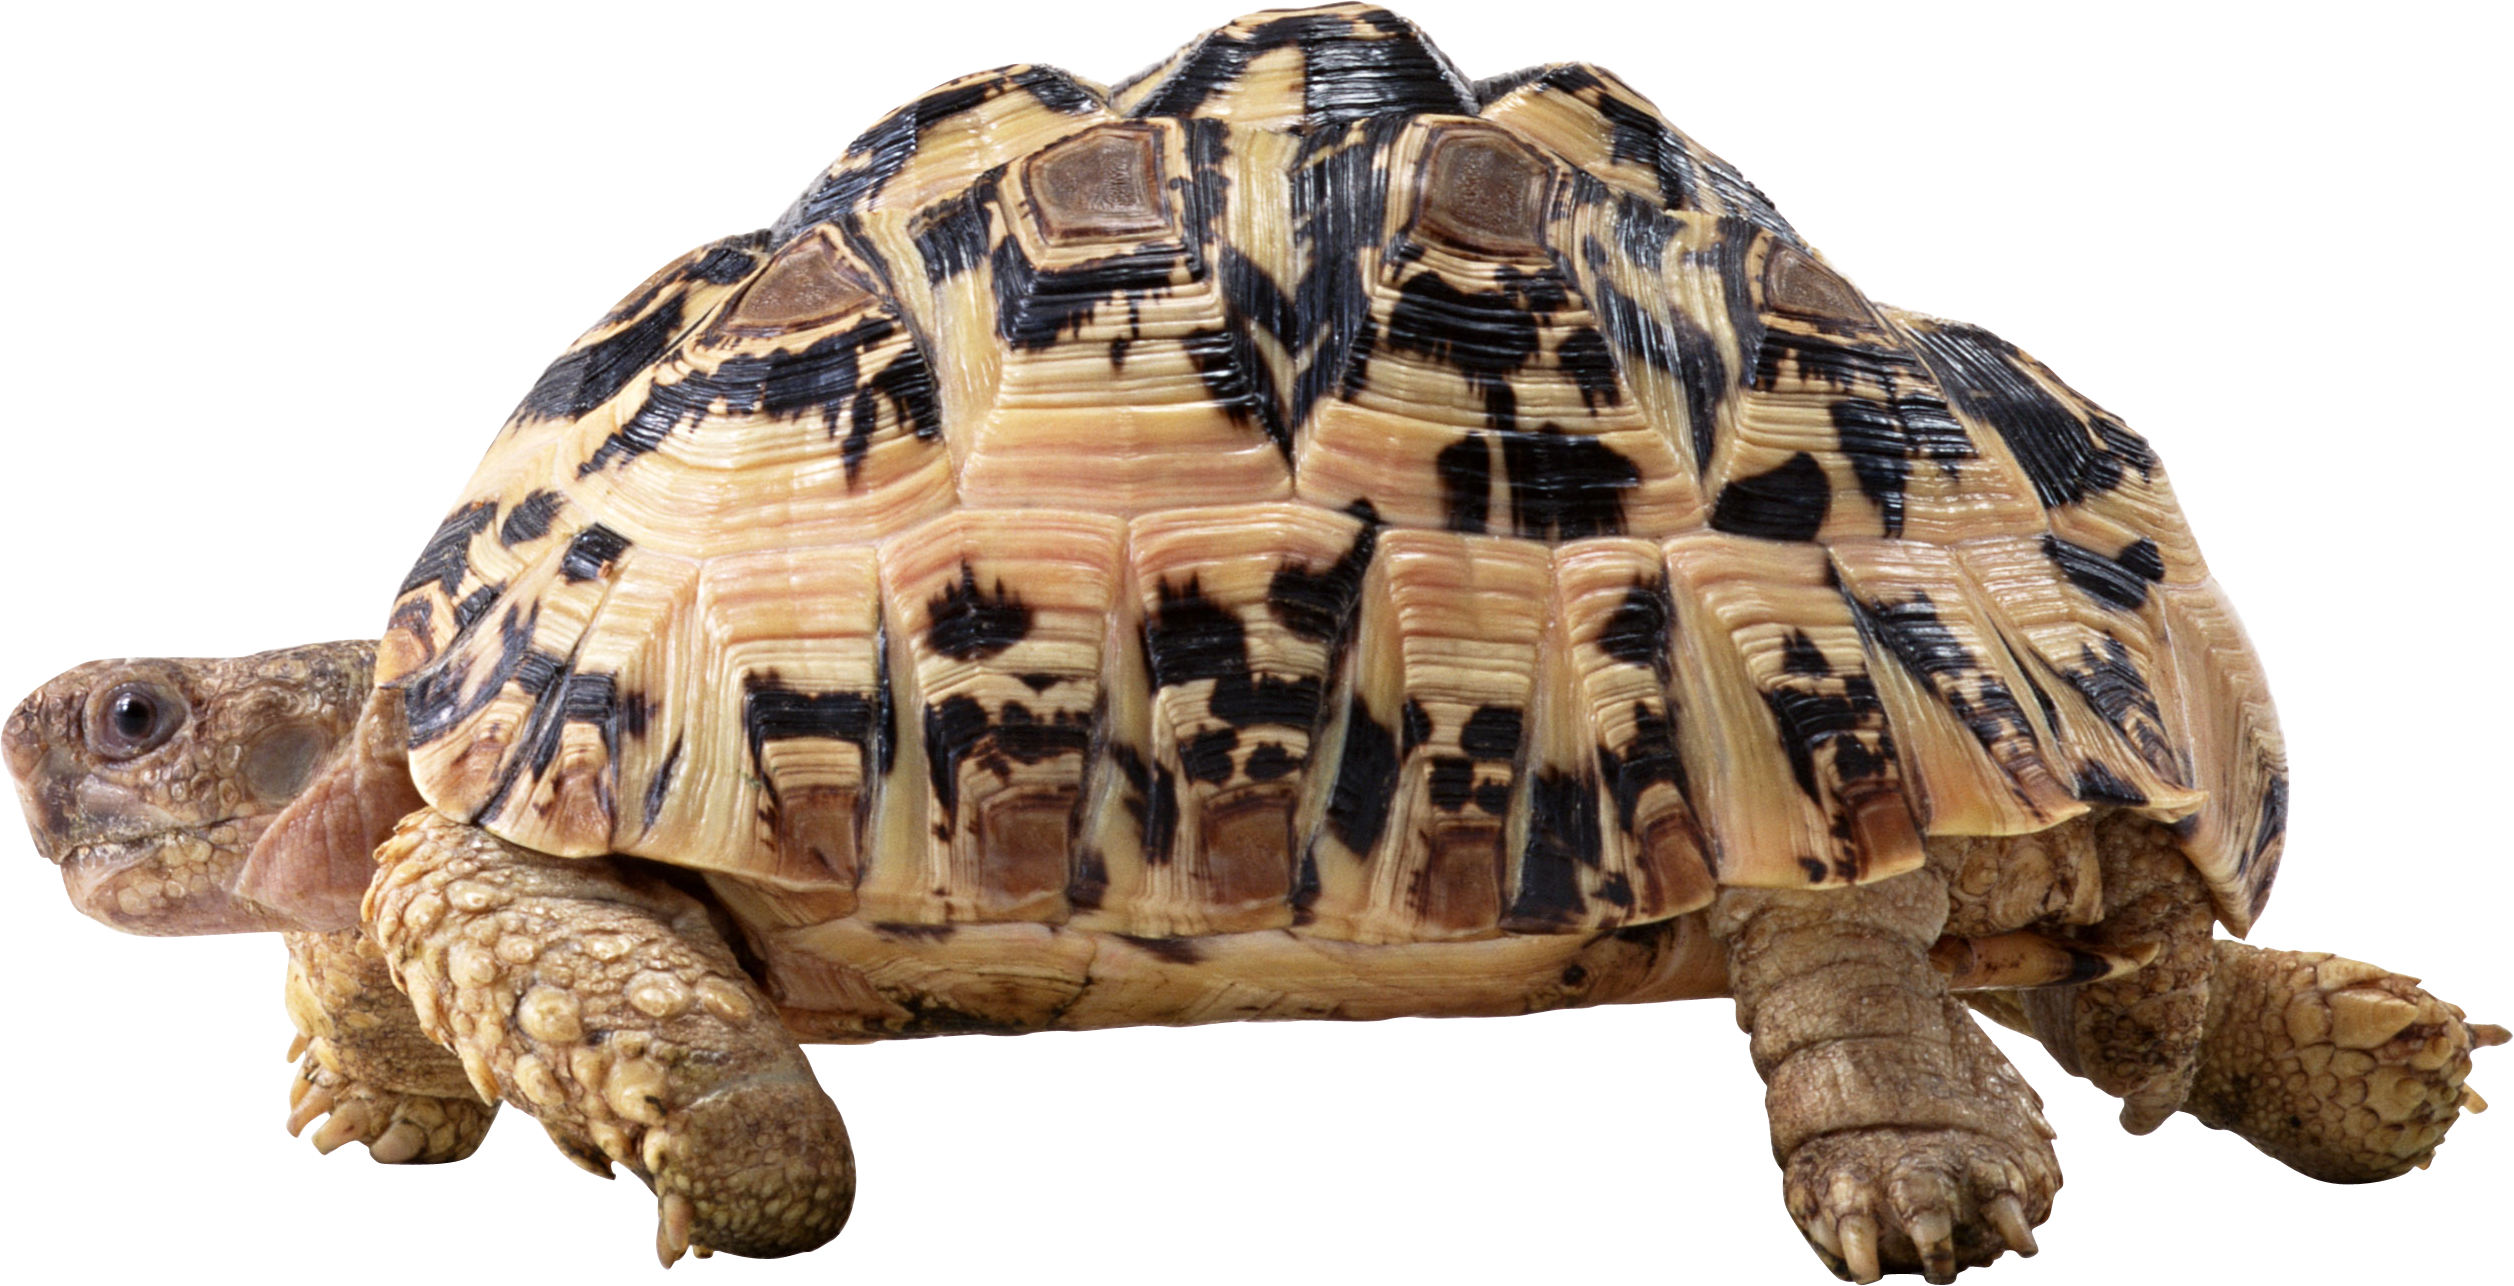 Image de tortue PNG avec fond Transparent